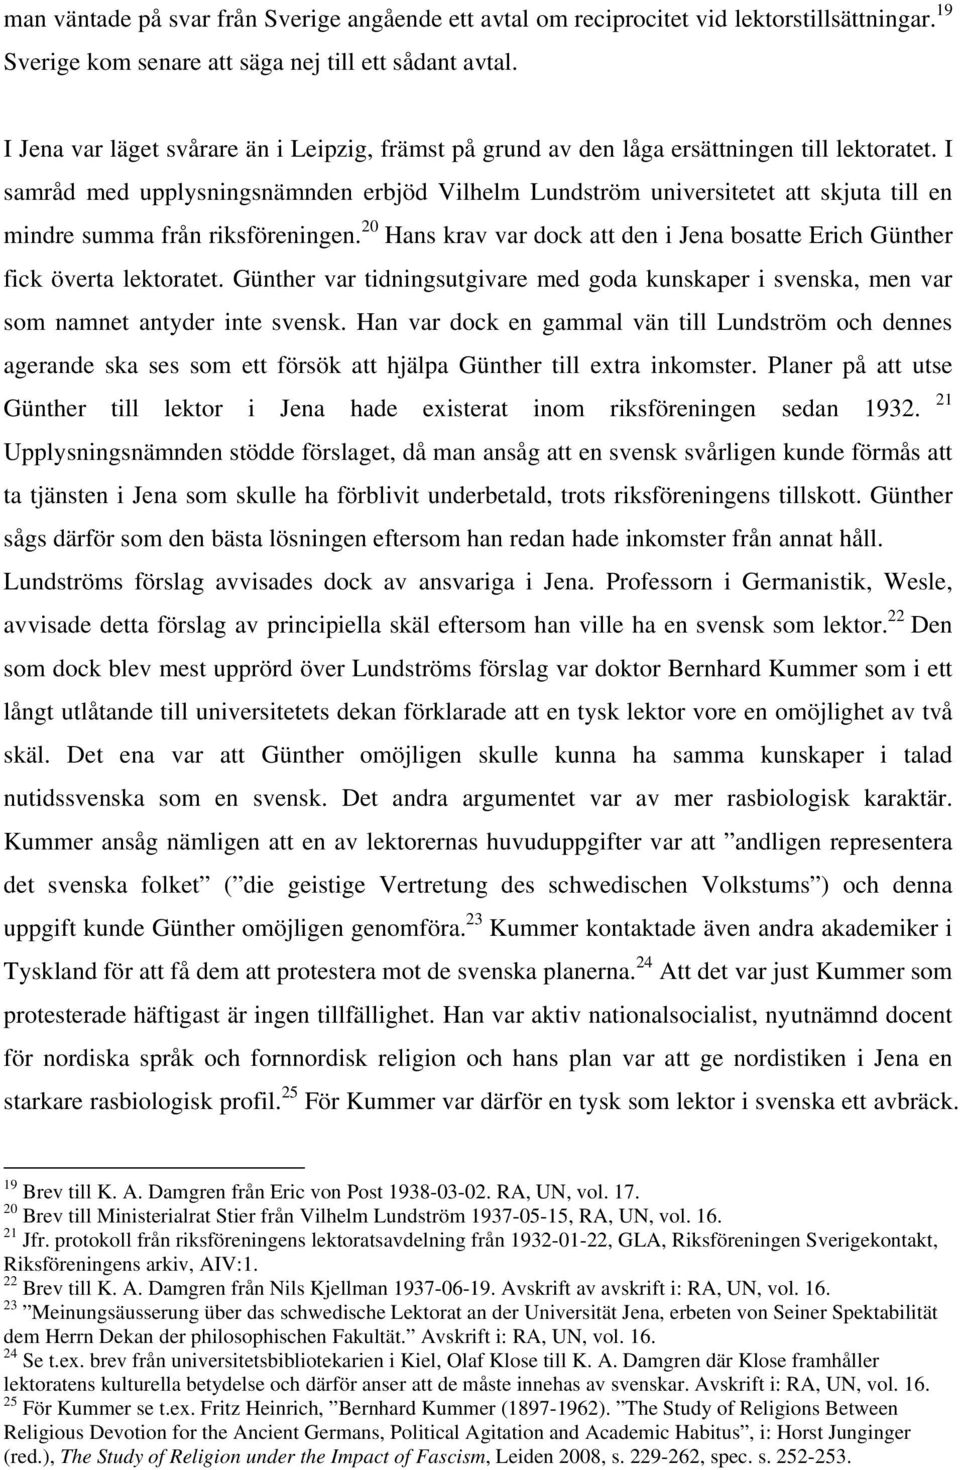 I samråd med upplysningsnämnden erbjöd Vilhelm Lundström universitetet att skjuta till en mindre summa från riksföreningen.